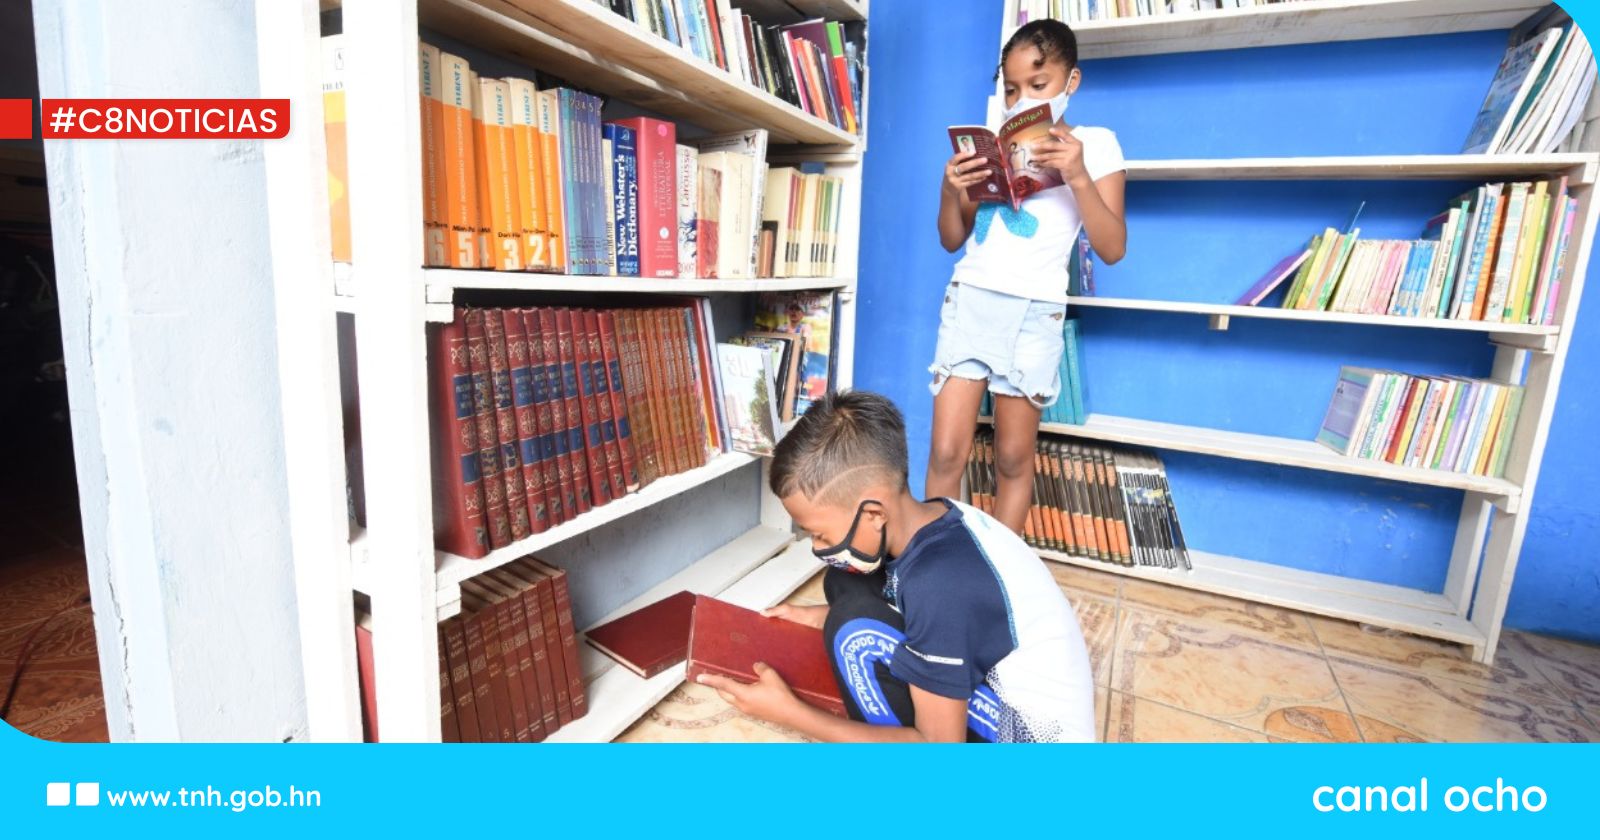 Iniciativa solidaria desde España permite abrir una biblioteca comunitaria en Honduras